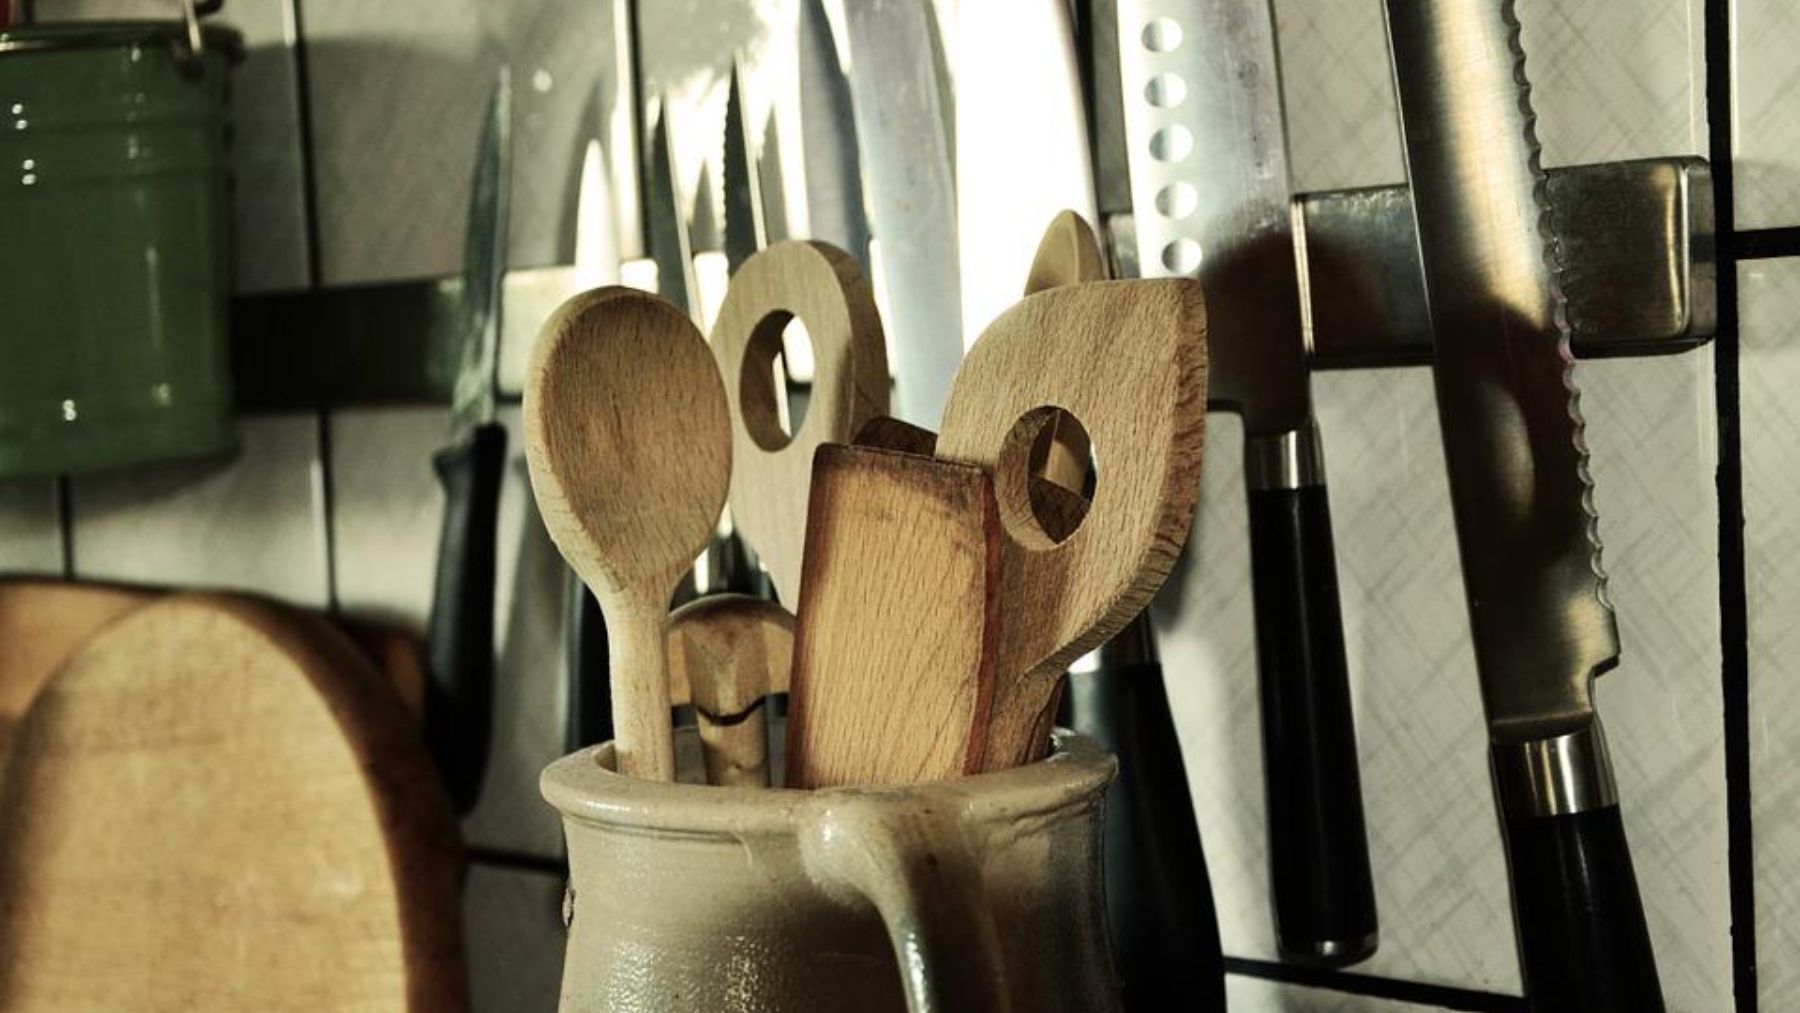 https://okdiario.com/img/2022/09/01/el-motivo-por-el-que-no-deberias-usar-utensilios-de-cocina-de-madera.jpg